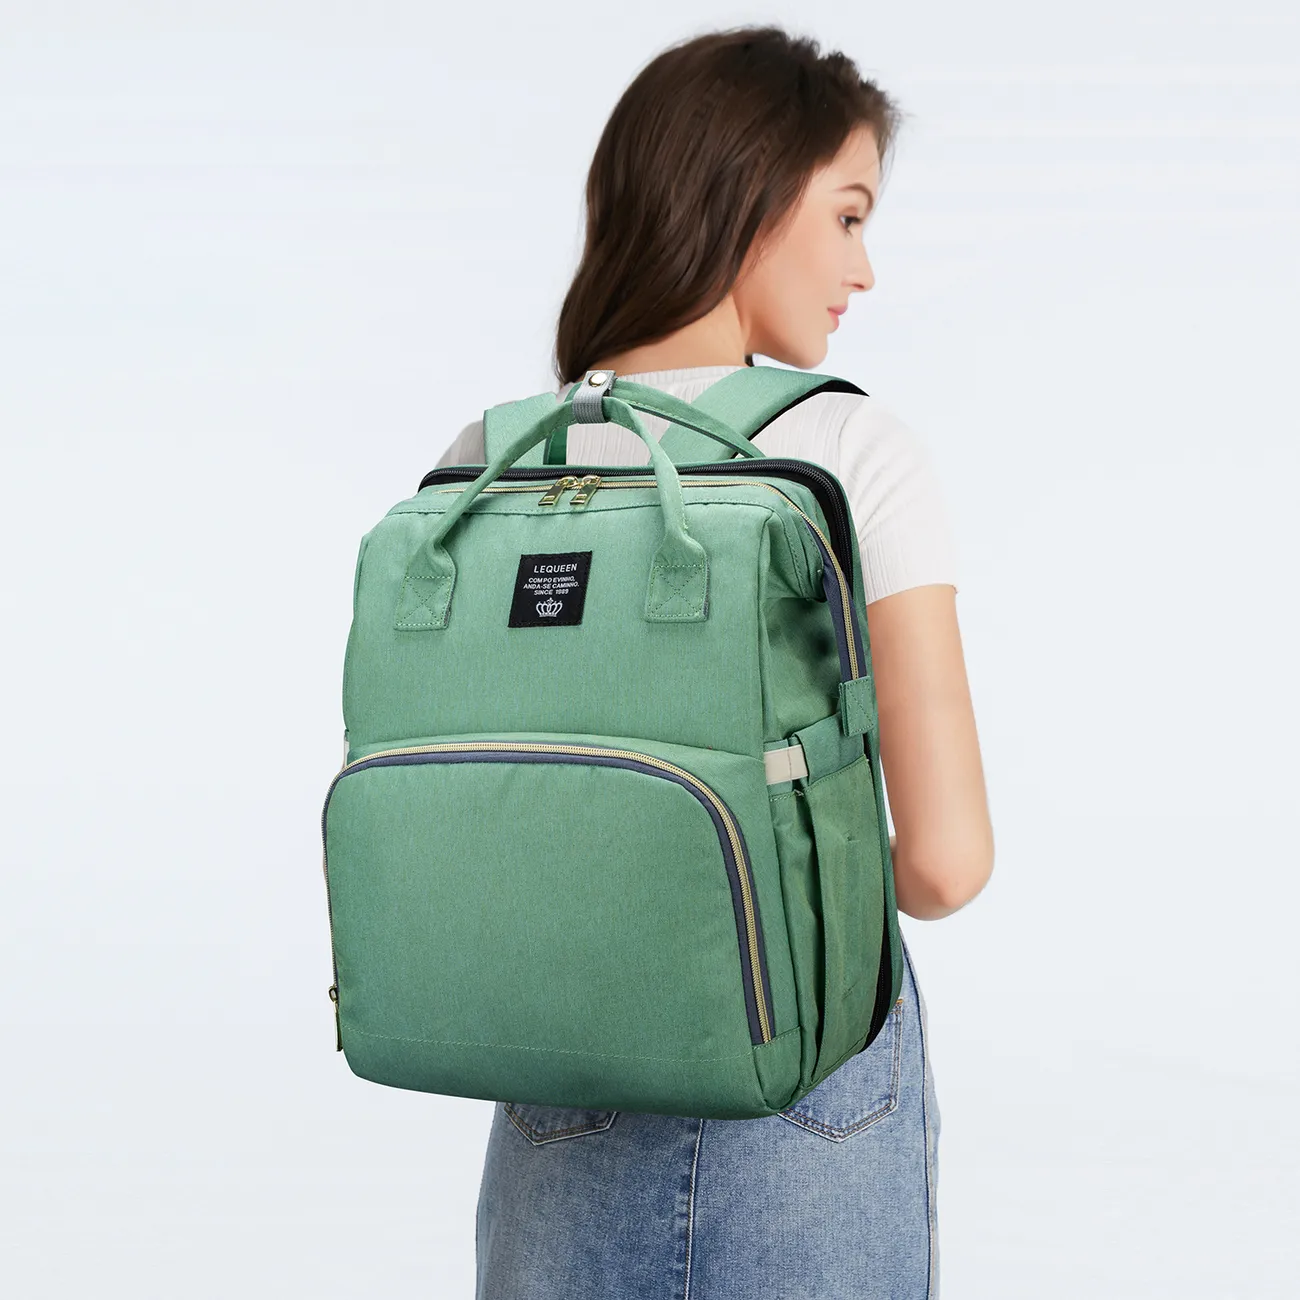 多色尿布袋背包大容量耐用孕婦旅行背包嬰兒護理帶換尿布墊 綠色 big image 1